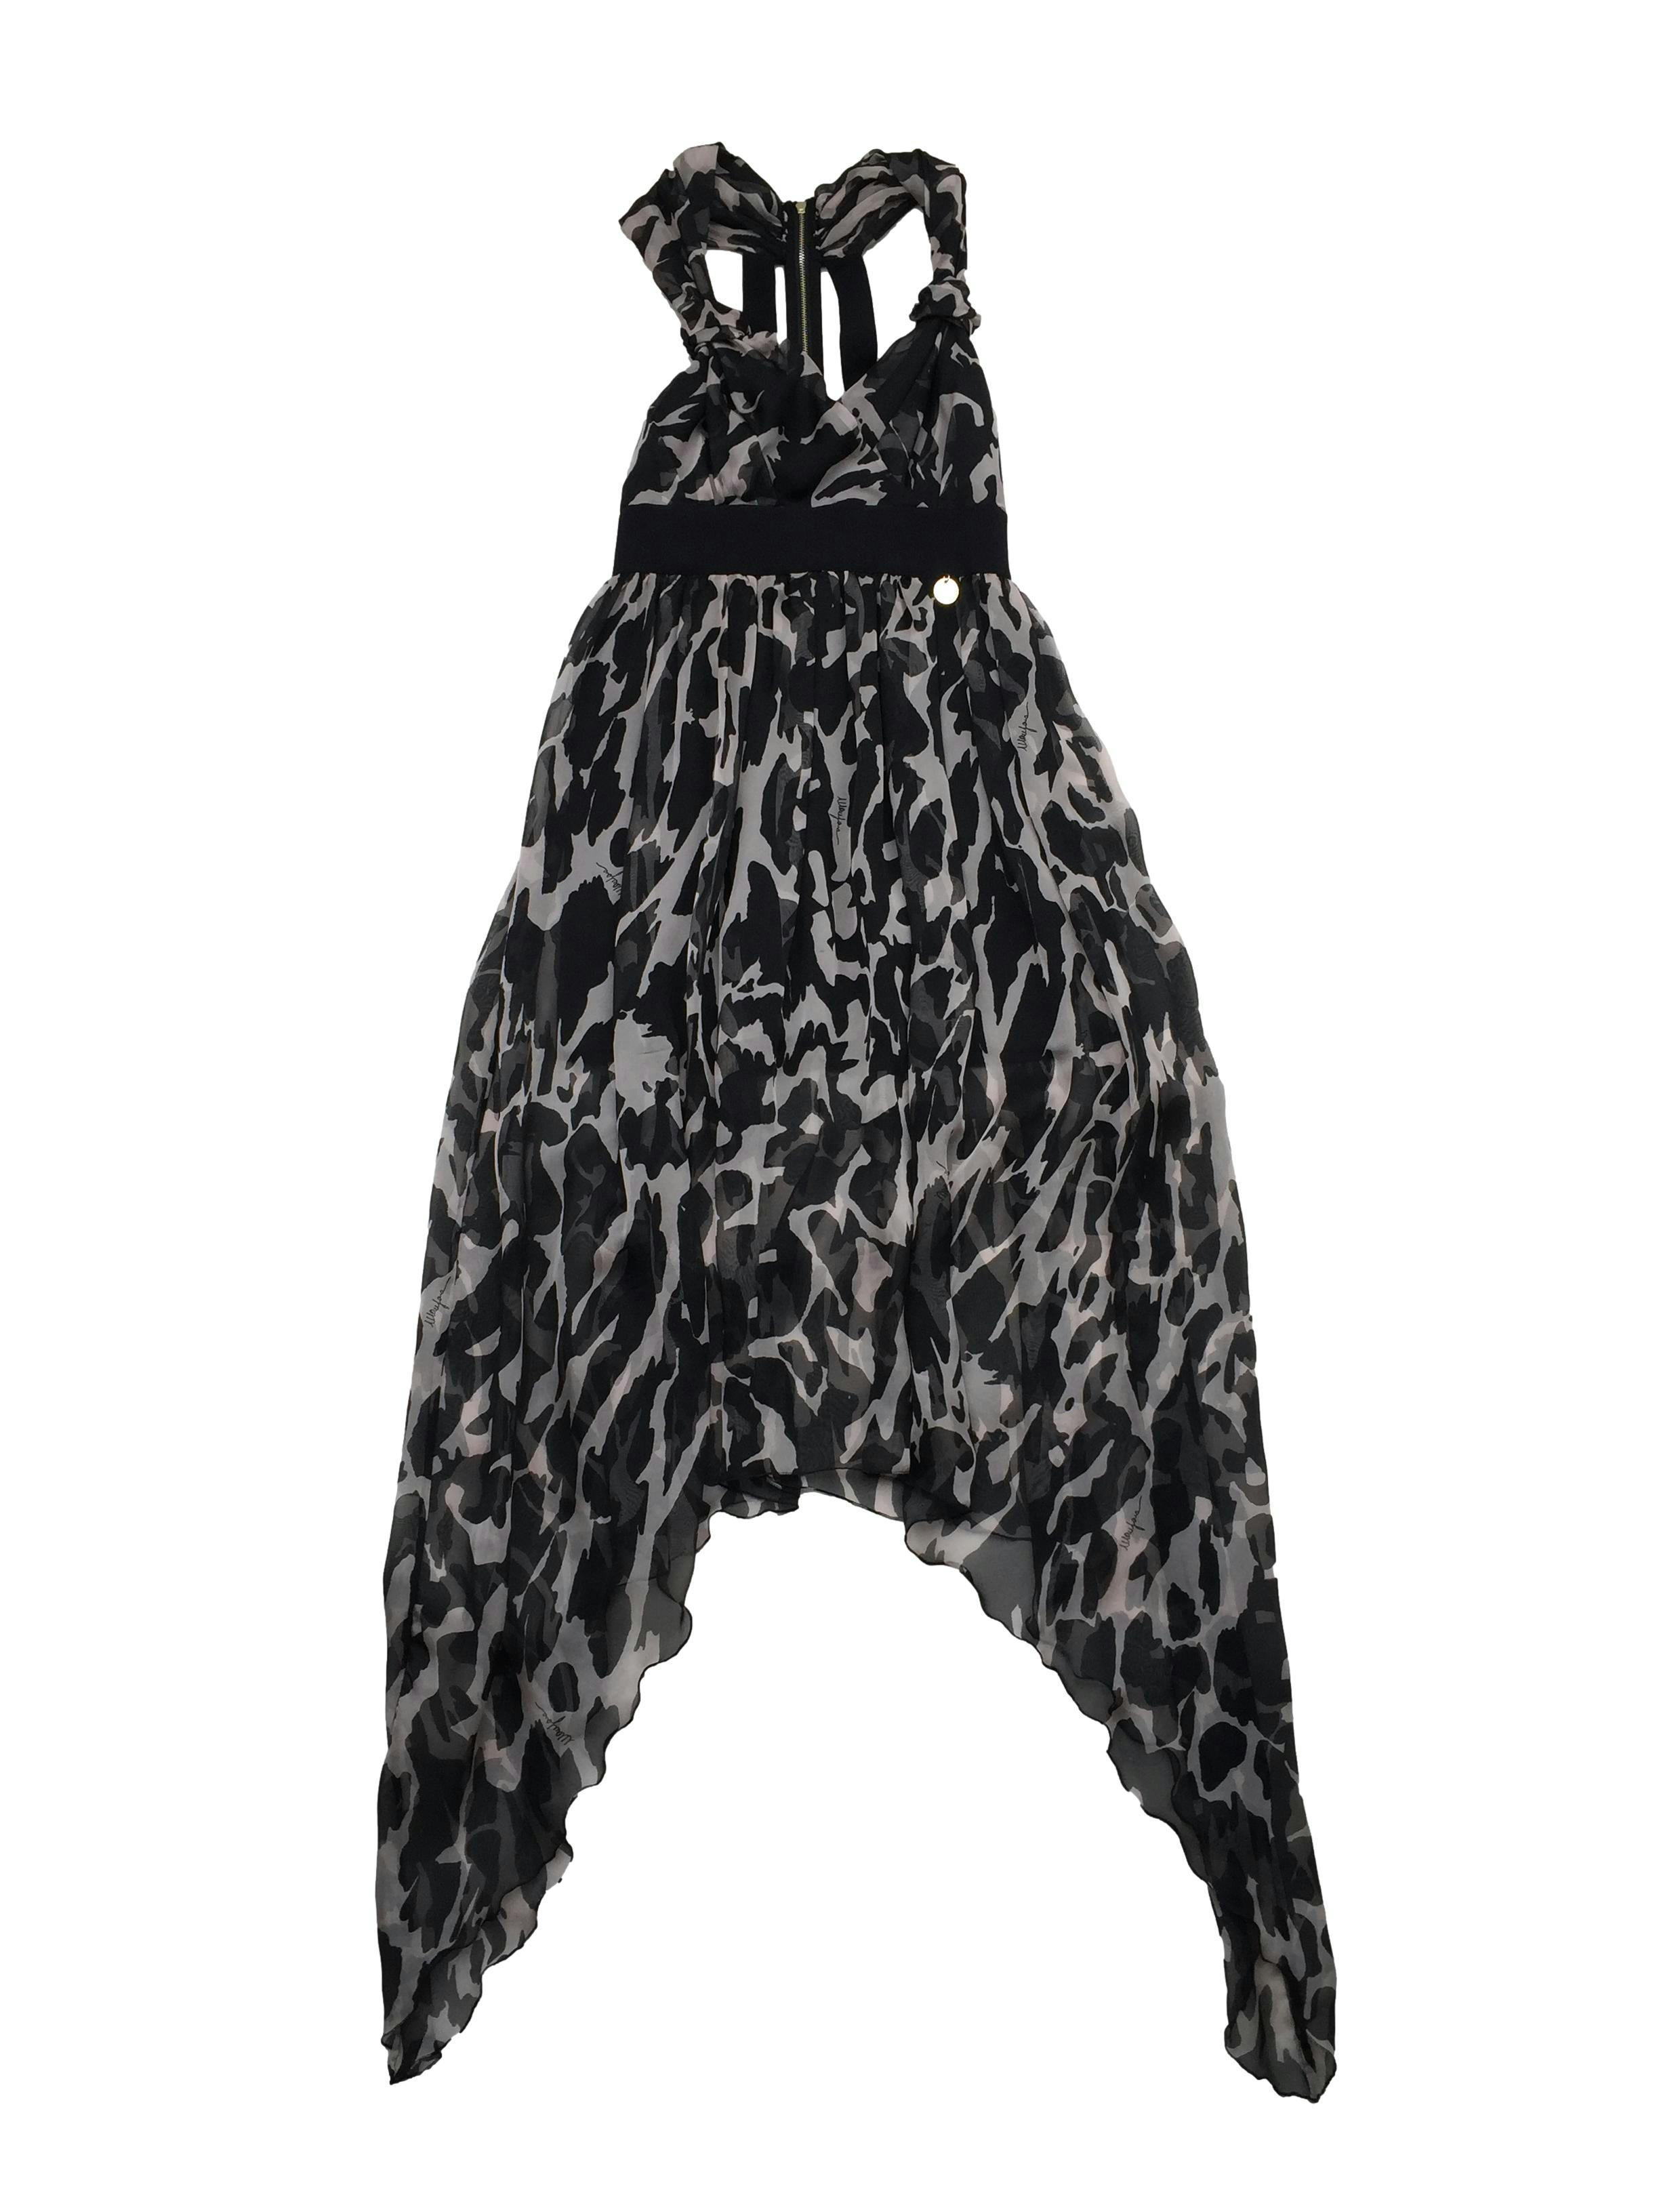 Vestido Mamgano gasa con estampado tipo acuarela en negro y gris, escote cruzado, forro, bajo asimétrico, espalda escotada con cierre metálico. Busto 88cm, Largo 140cm.